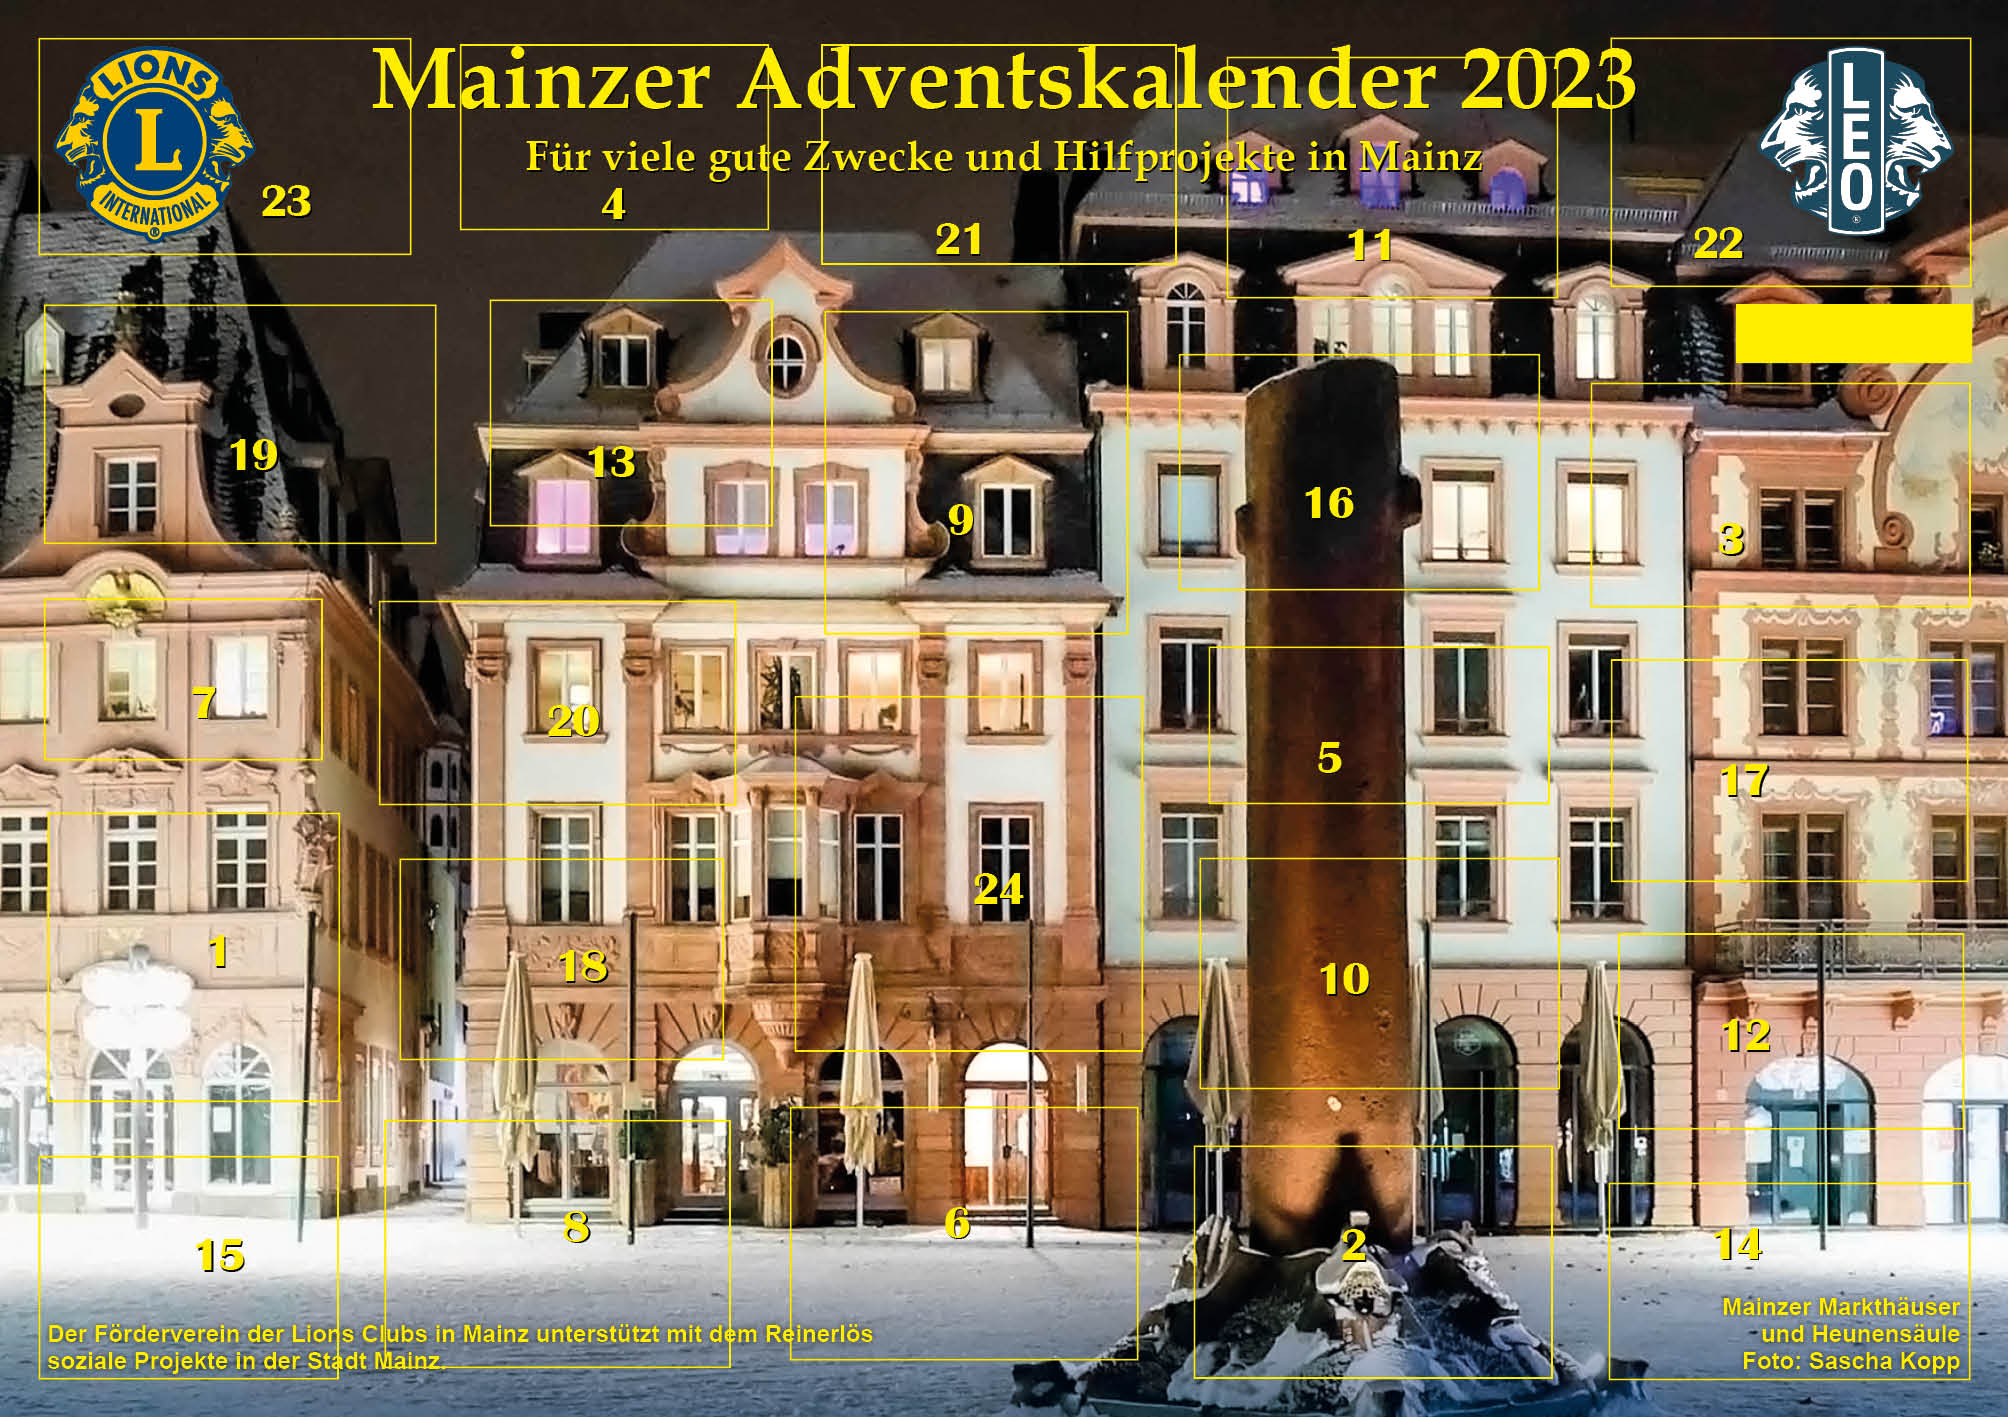 (c) Mainzer-adventskalender.de